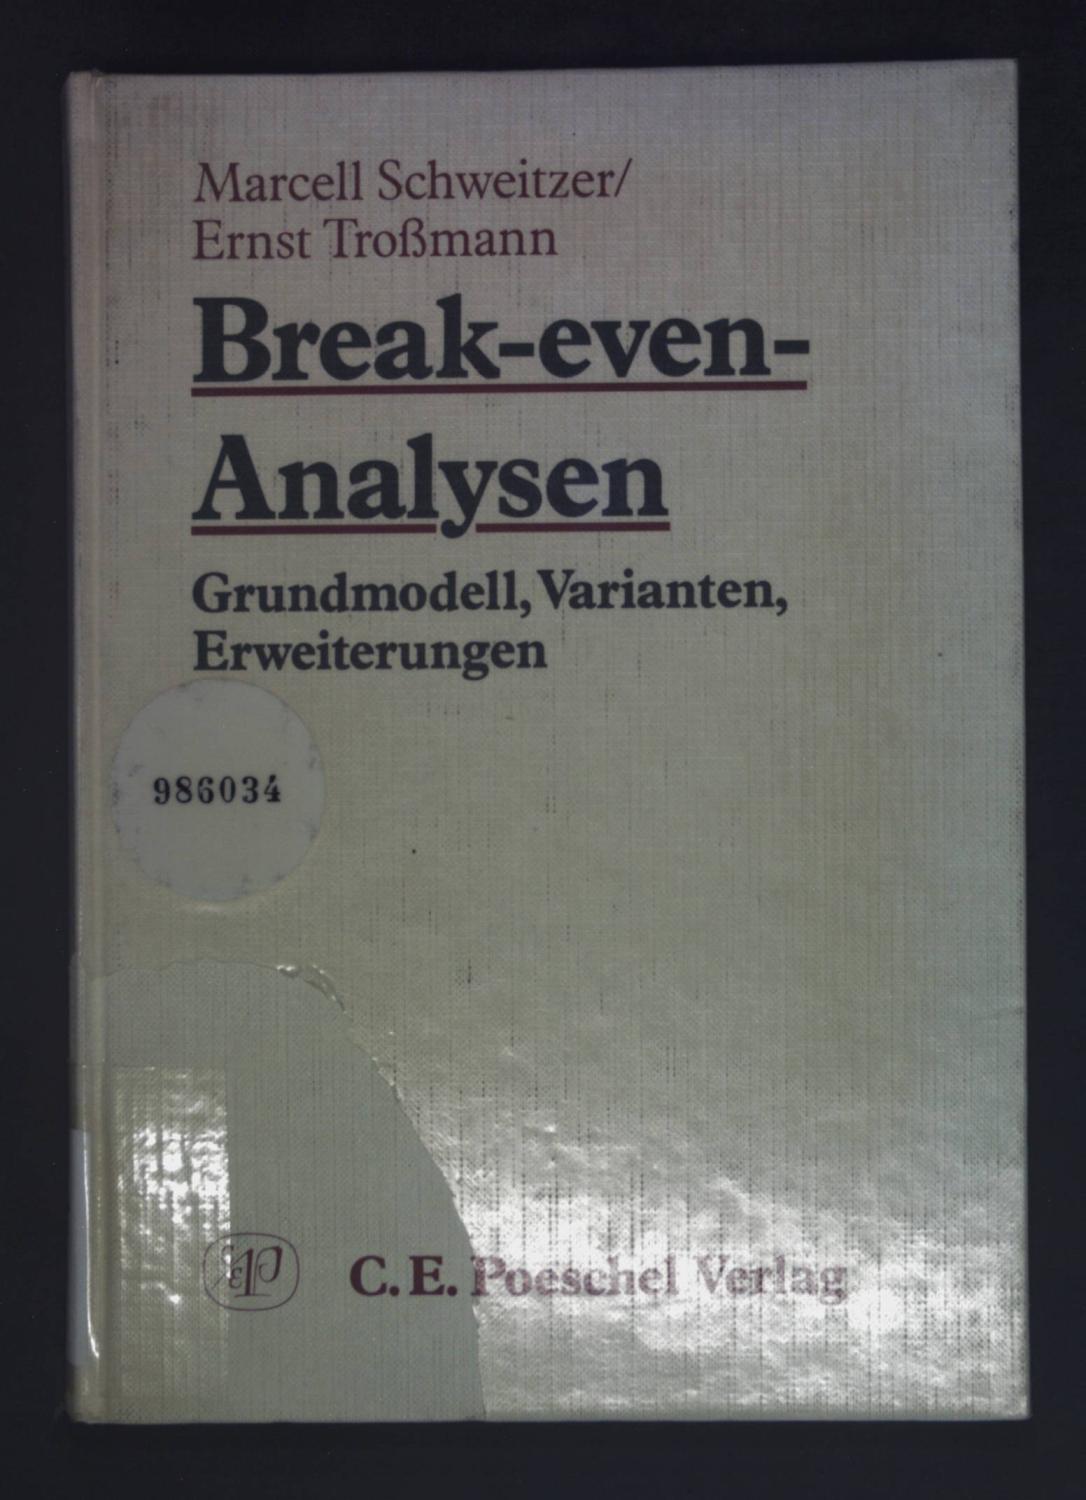 Break-even-Analysen : Grundmodell, Varianten, Erweiterungen. - Schweitzer, Marcell und Ernst Troßmann